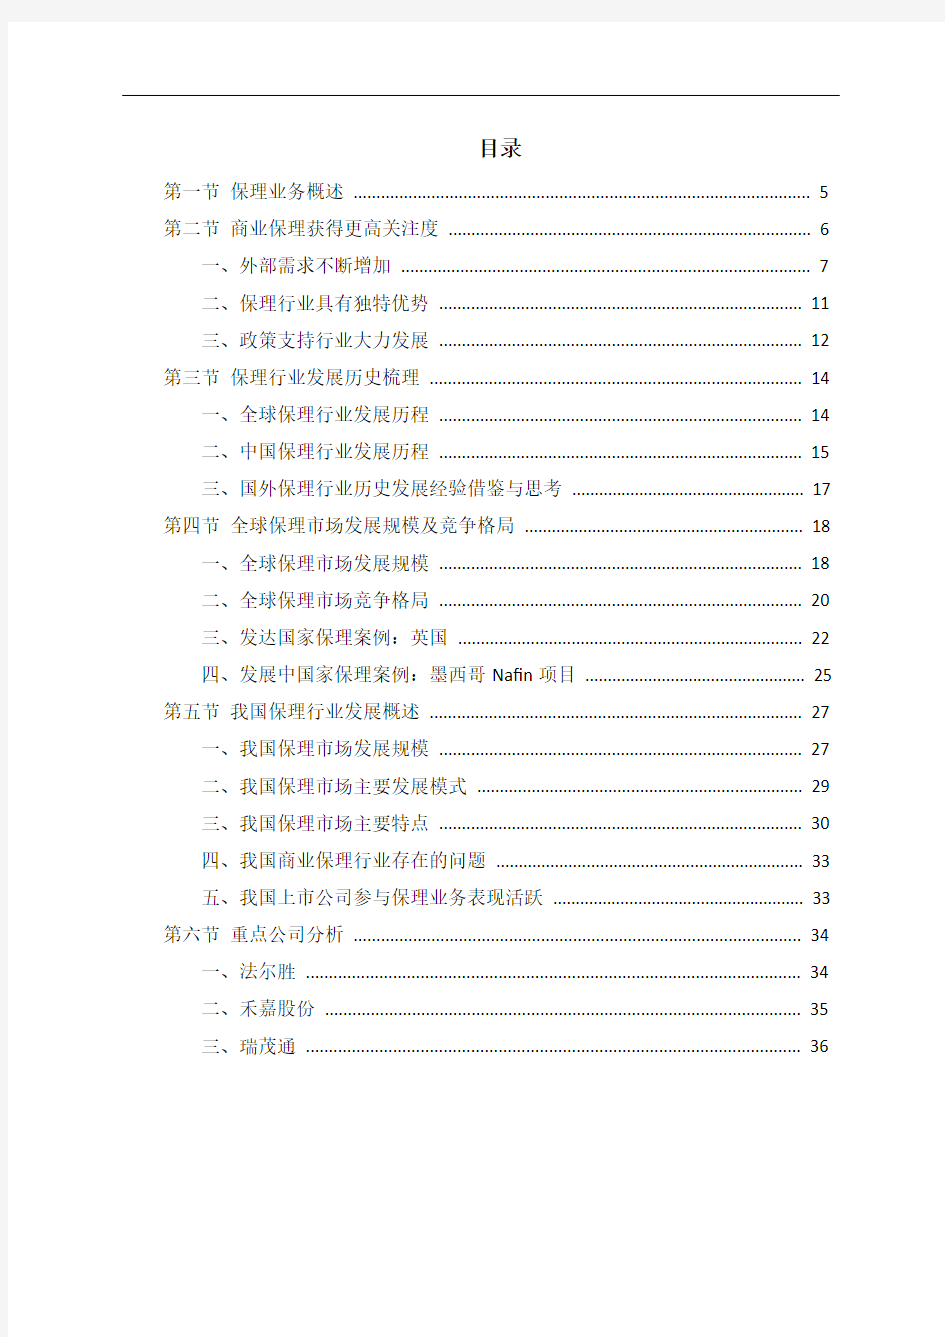 中国商业保理市场投资咨询分析报告